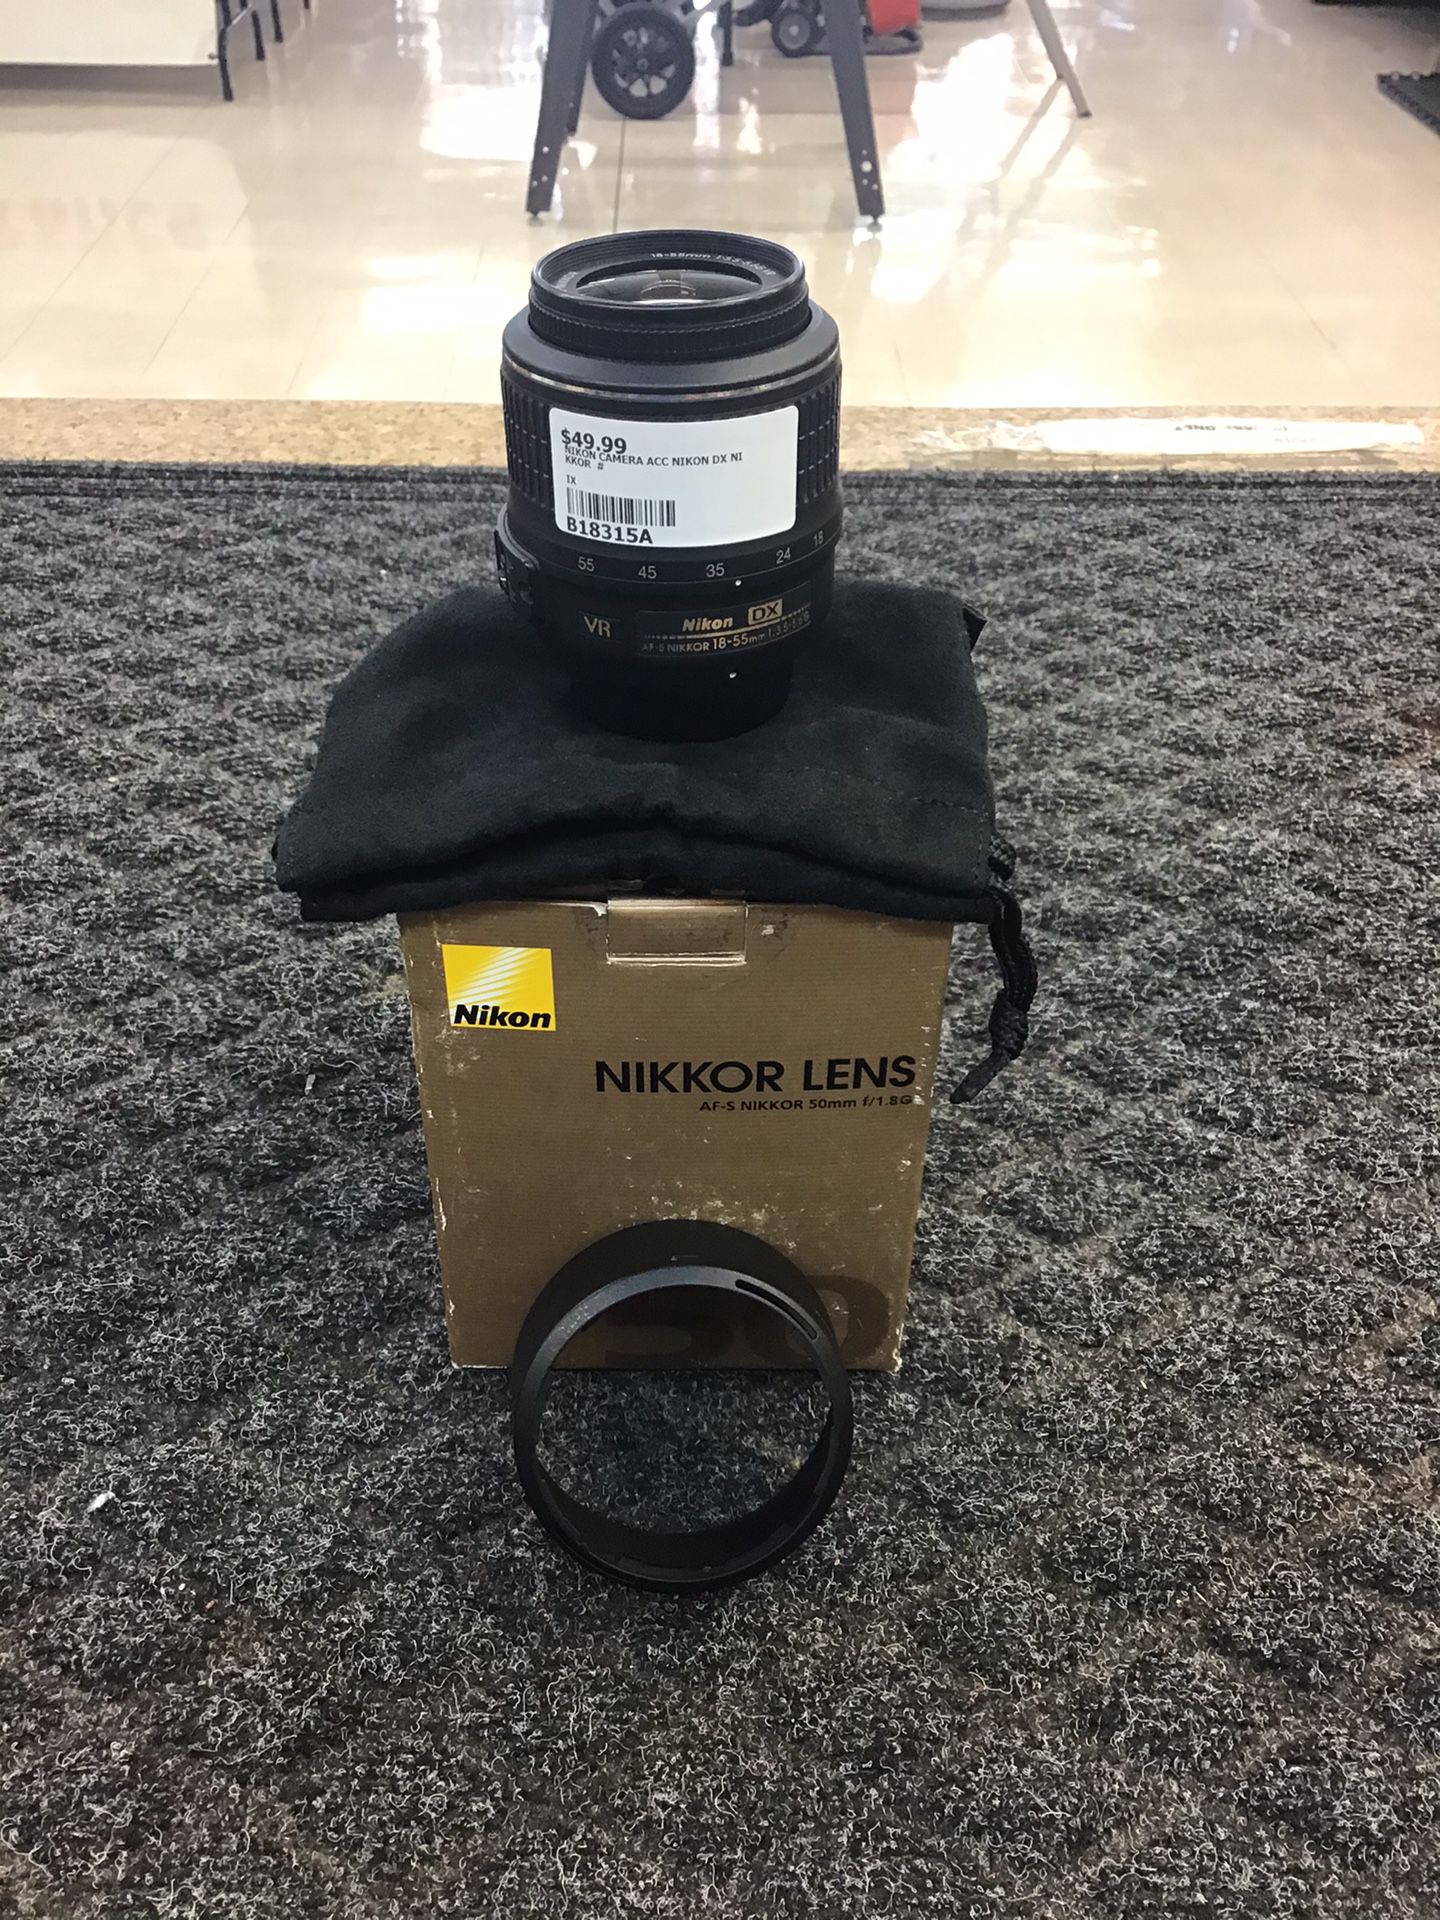 Nikon Nikkor Lens 18-55mm